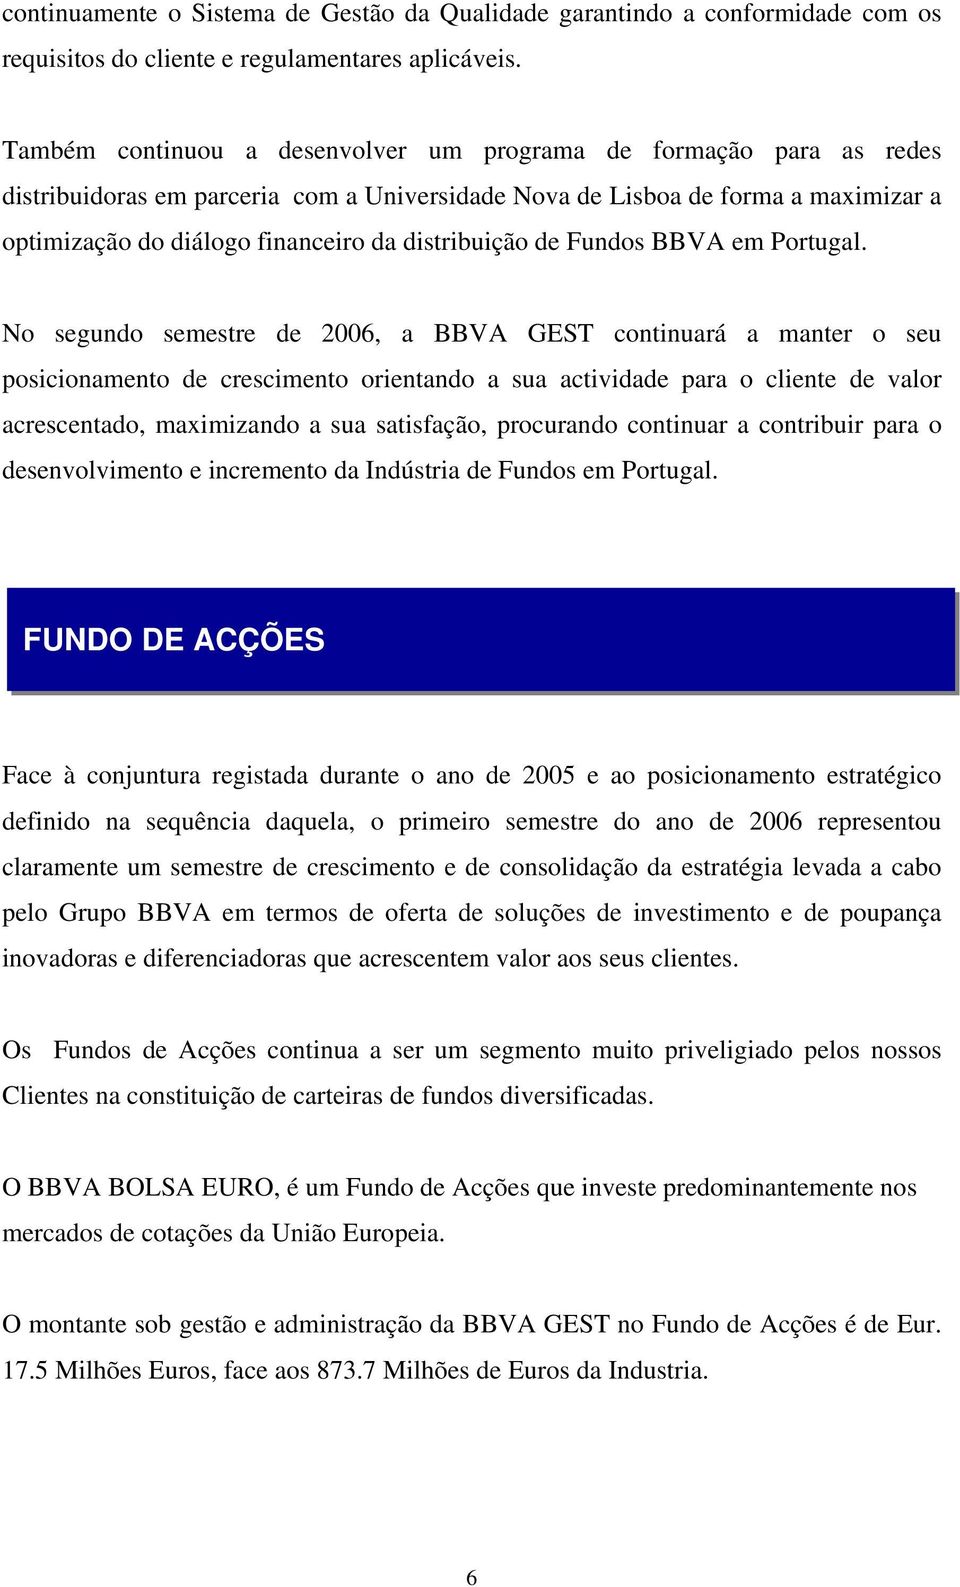 distribuição de Fundos BBVA em Portugal.